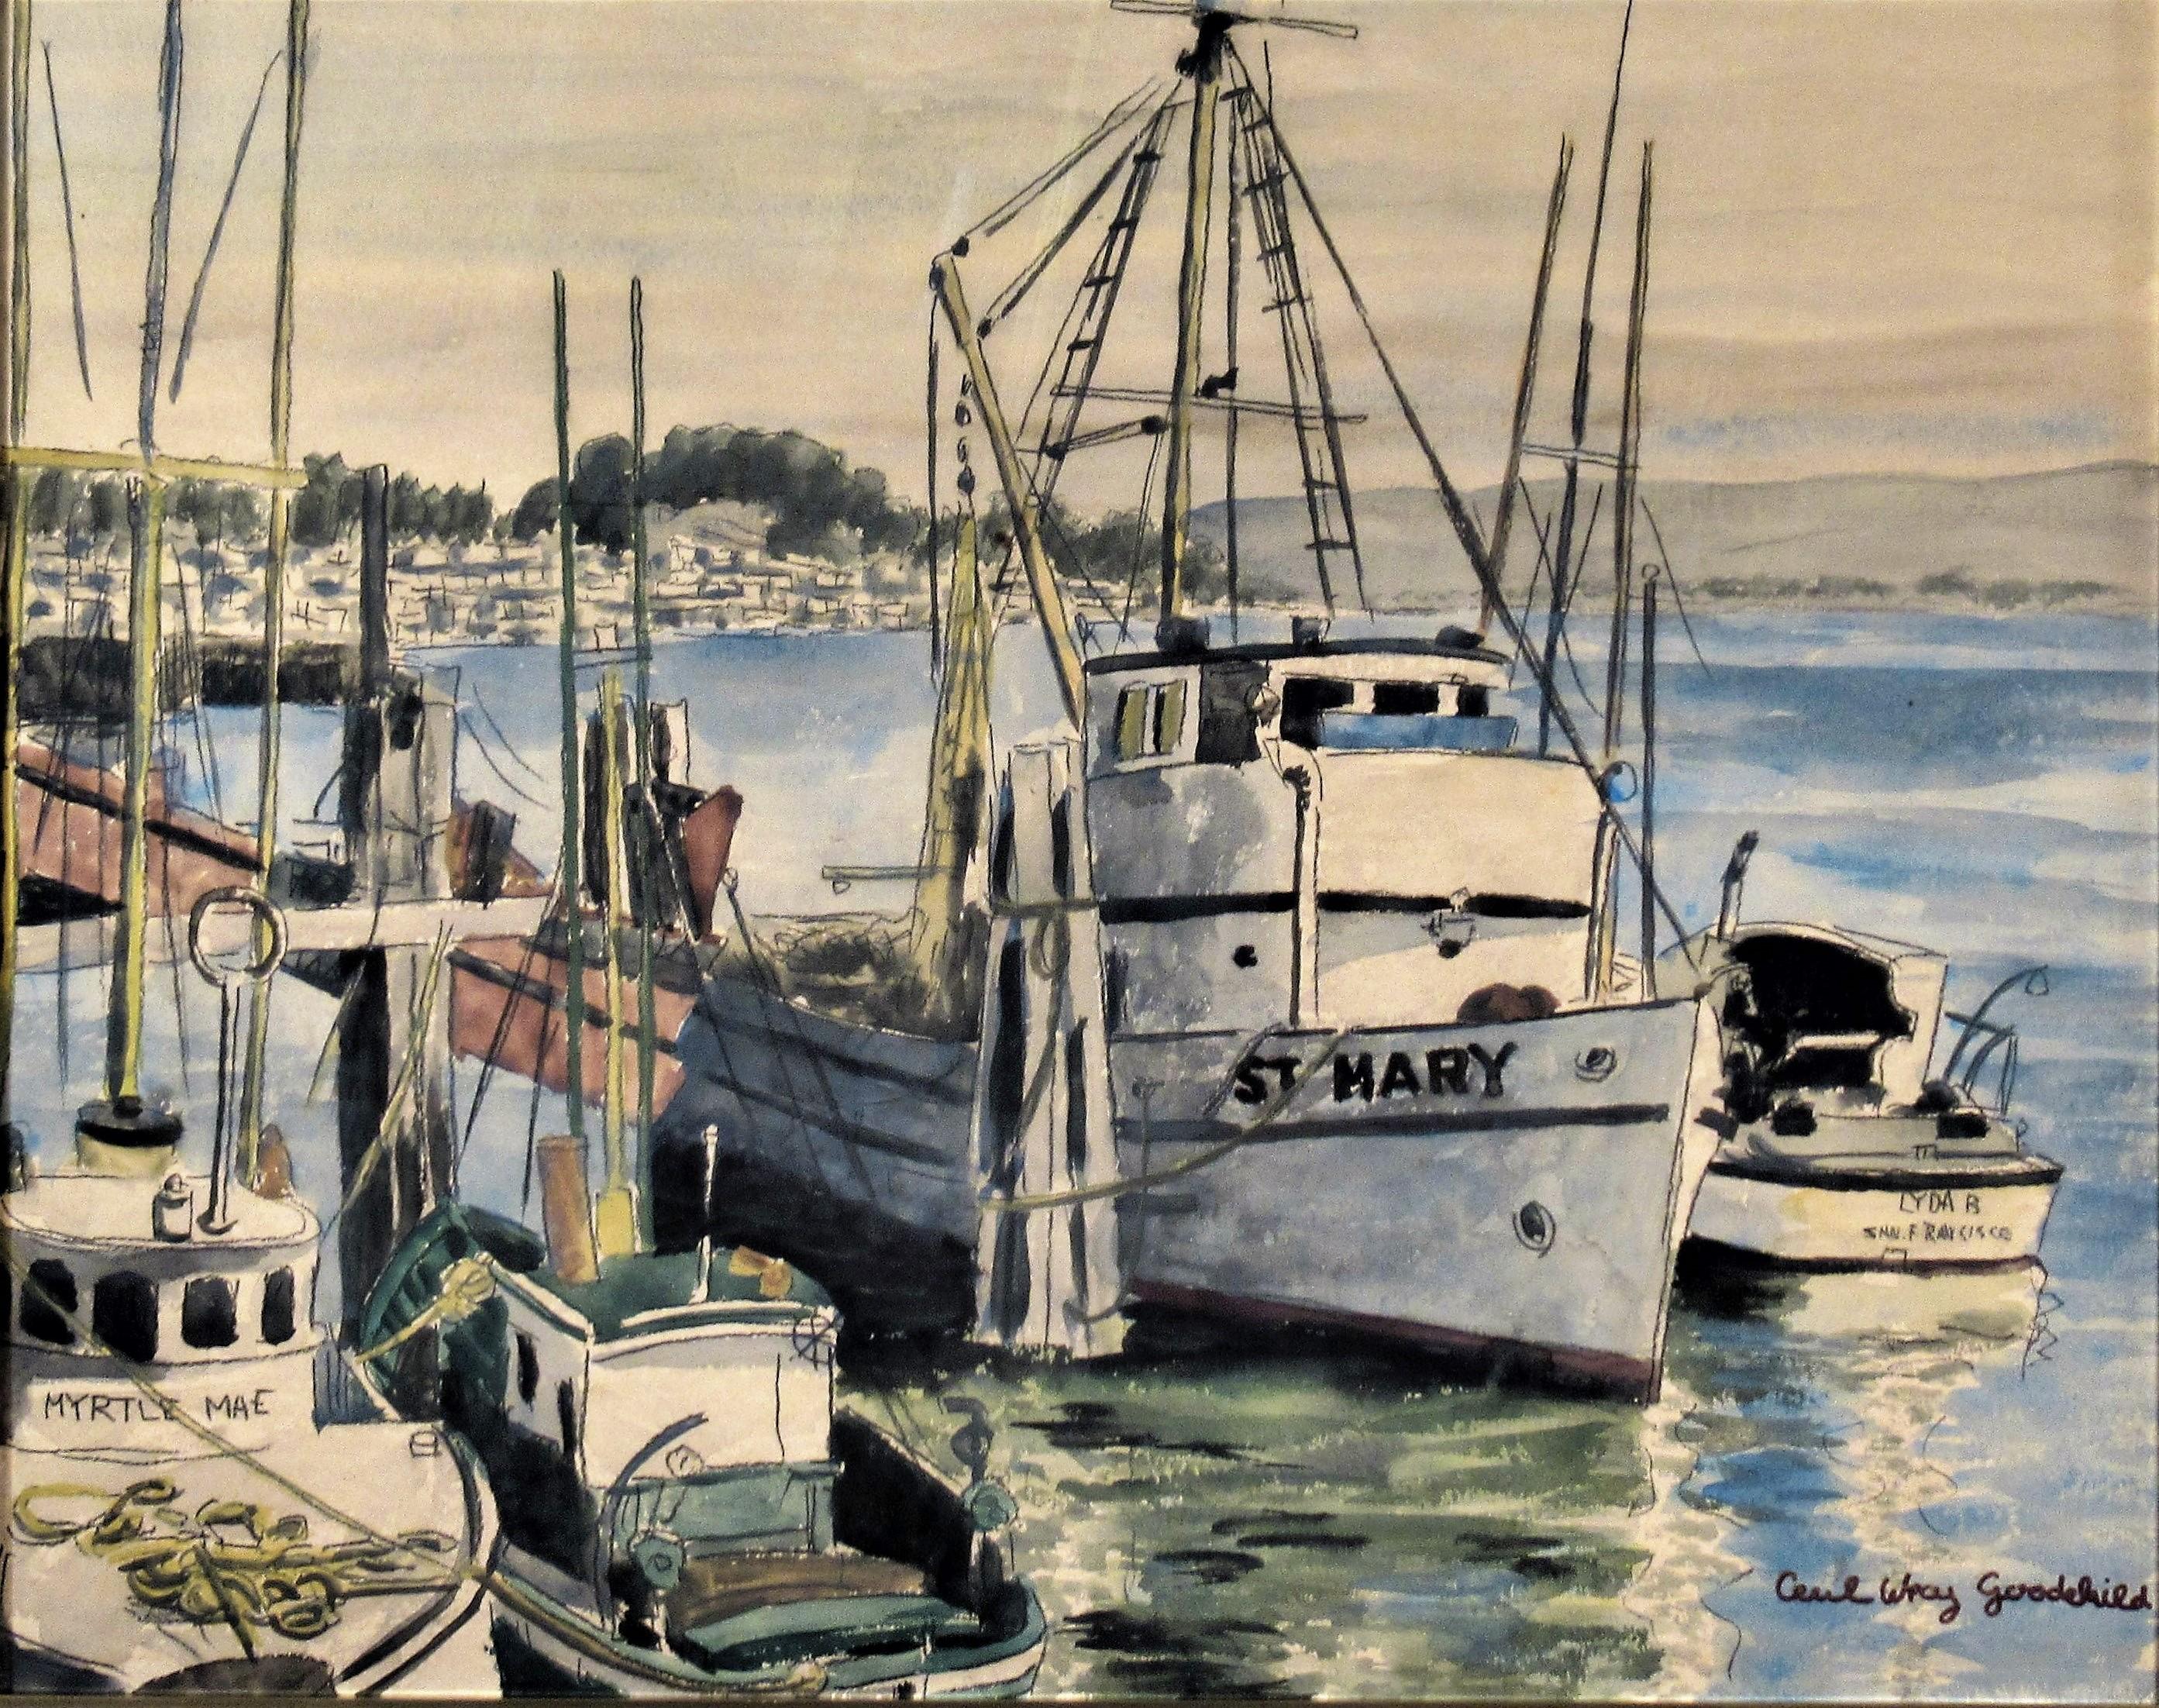 St. Mary, Morro bay, California - Art by Cecil Wray Goodchild